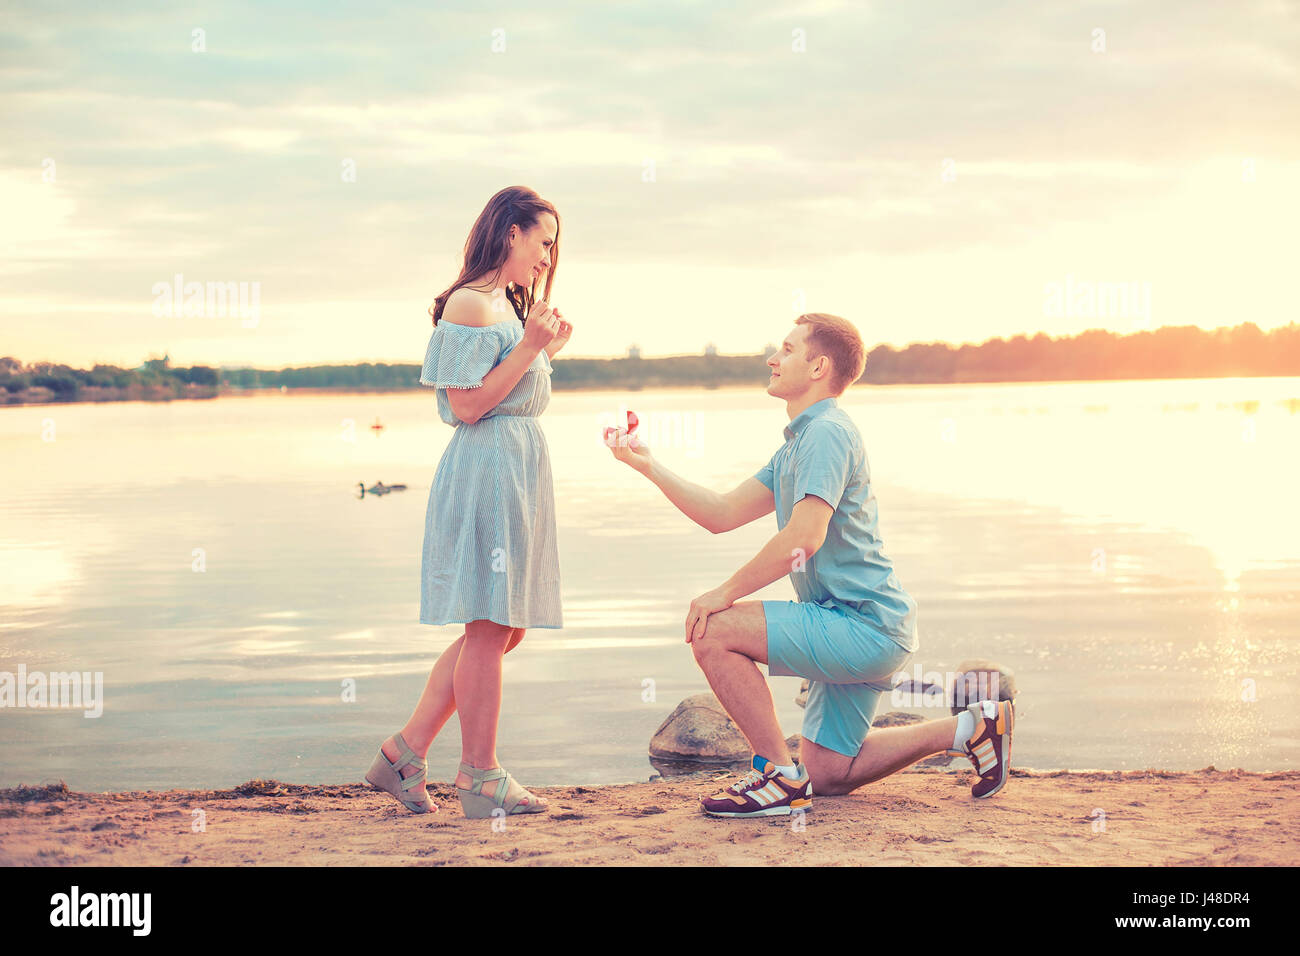 Heiratsantrag bei Sonnenuntergang. junger Mann macht einen Vorschlag der Verlobung mit seiner Freundin am Strand Stockfoto